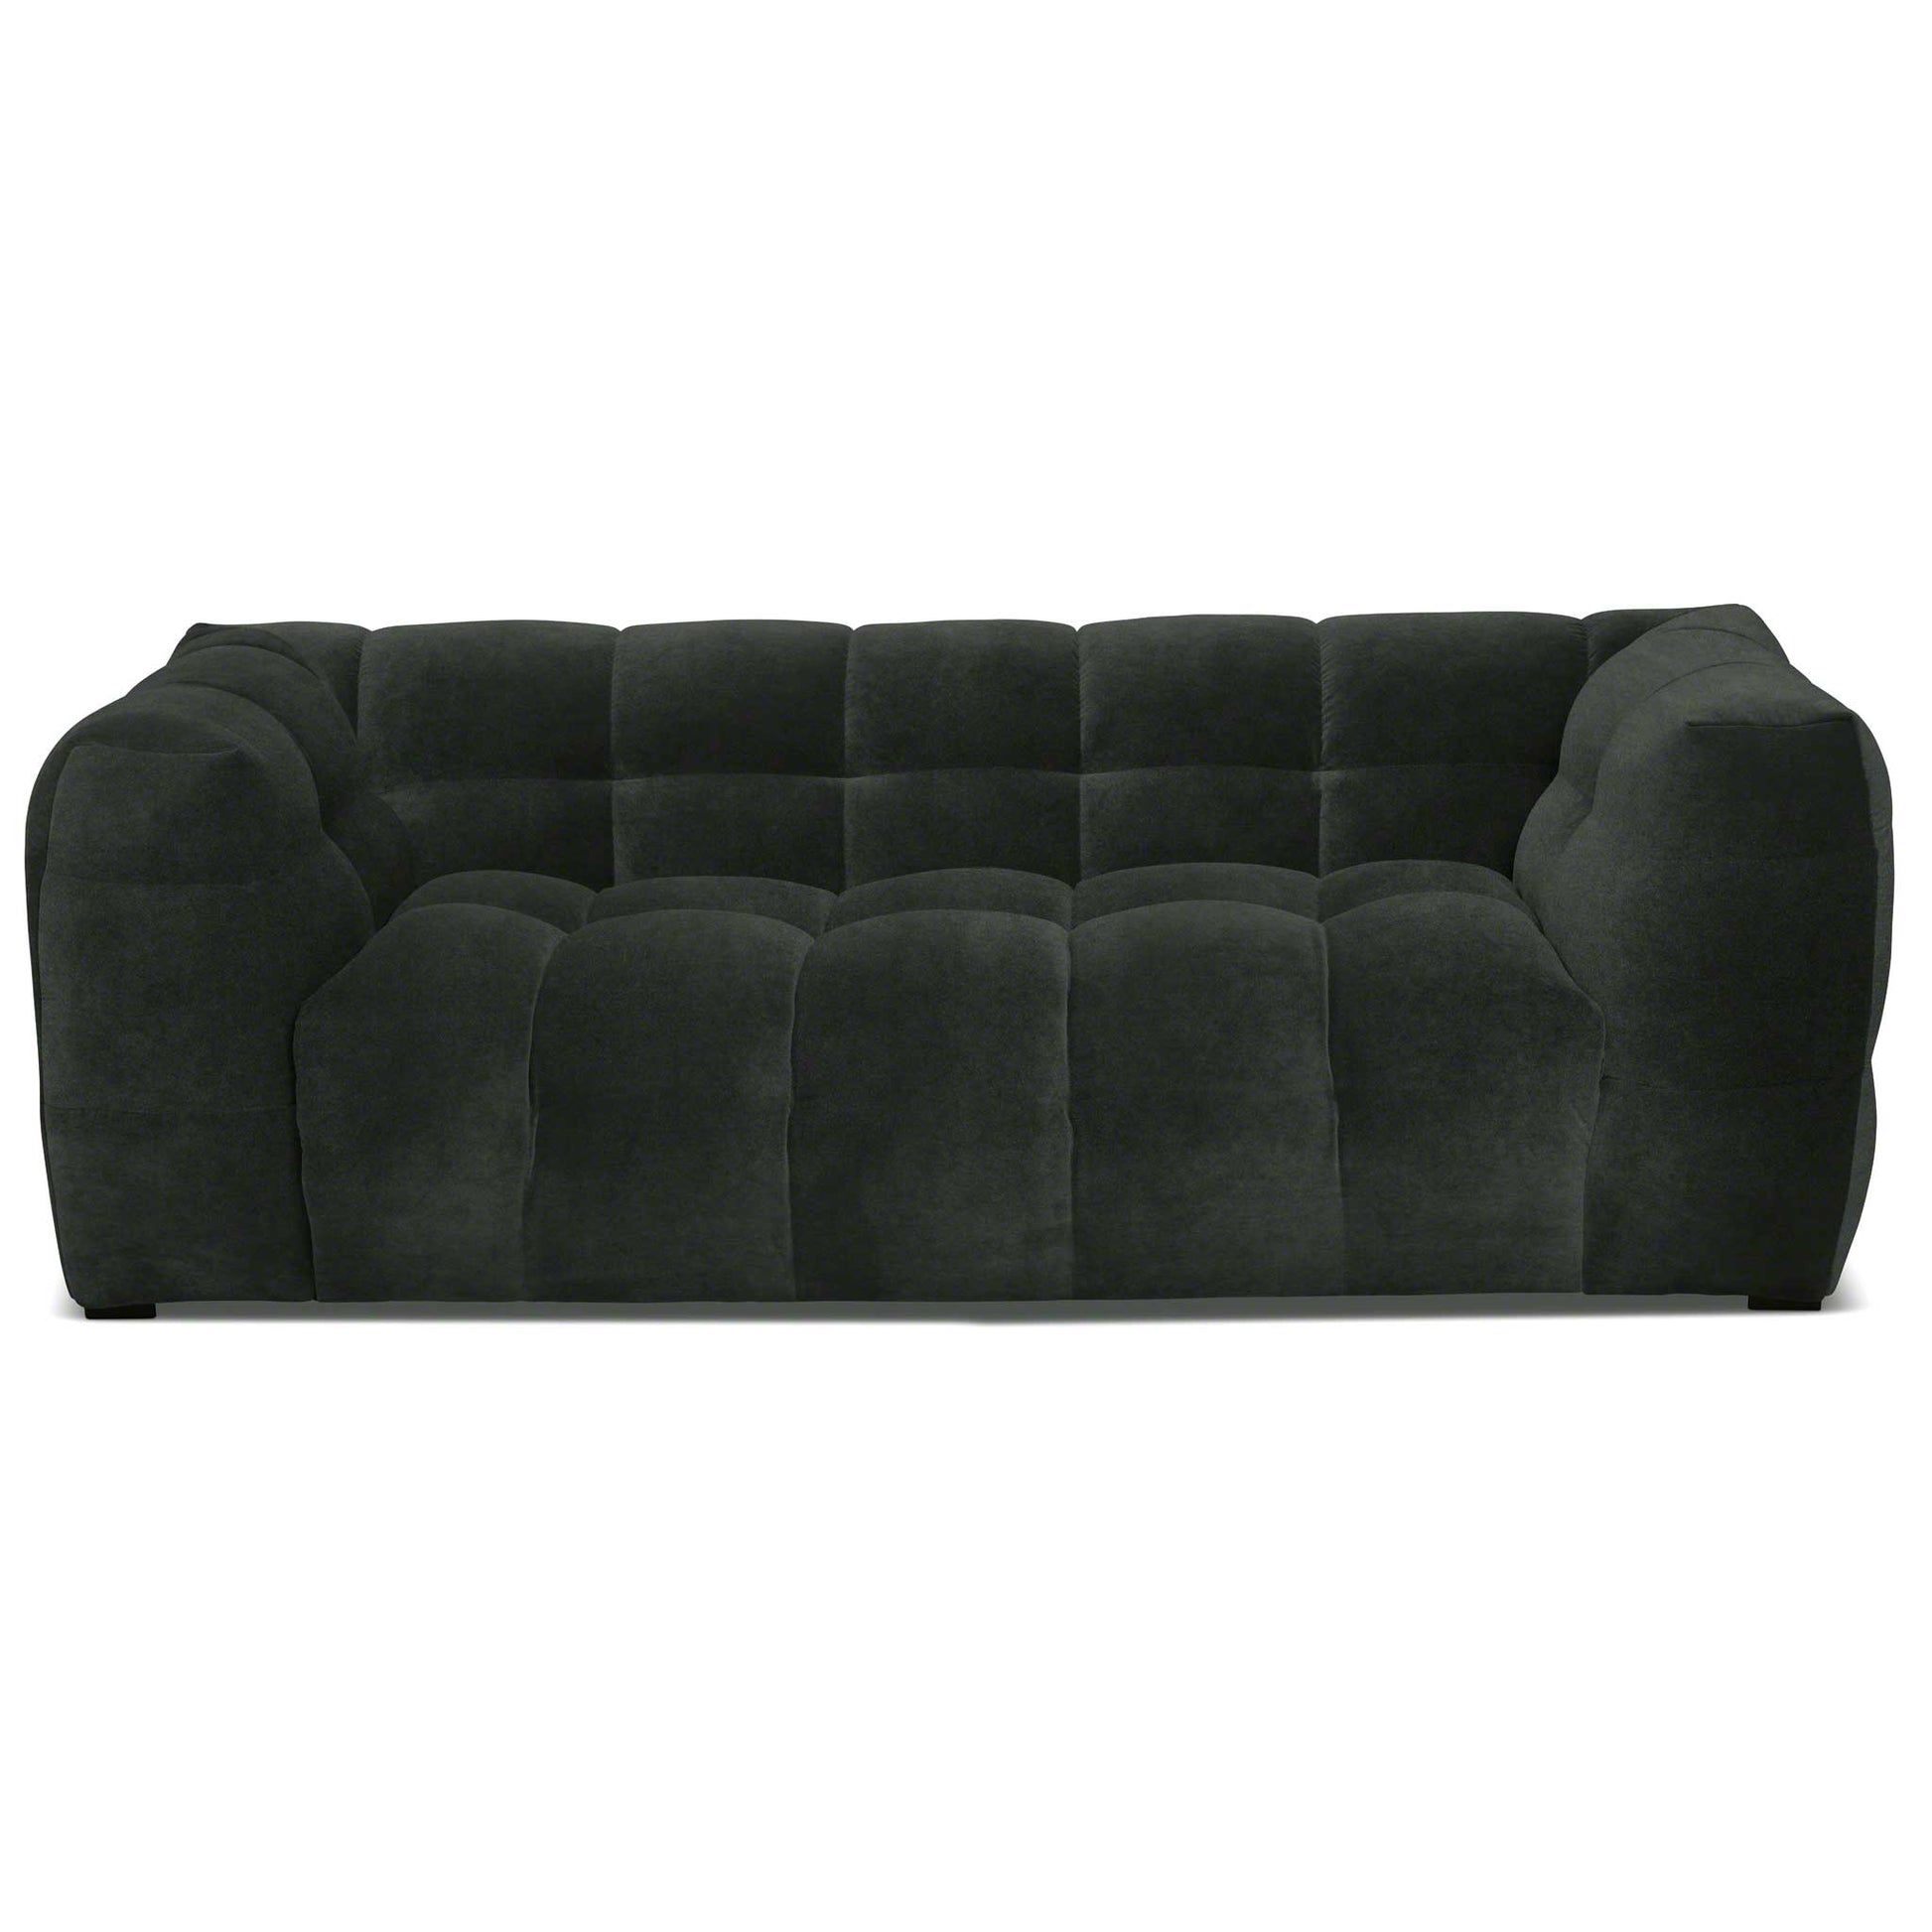 Läcker liten 2-sits soffa i mörkgrön sammet av hög kvalitet. Bubbligt designspråk.